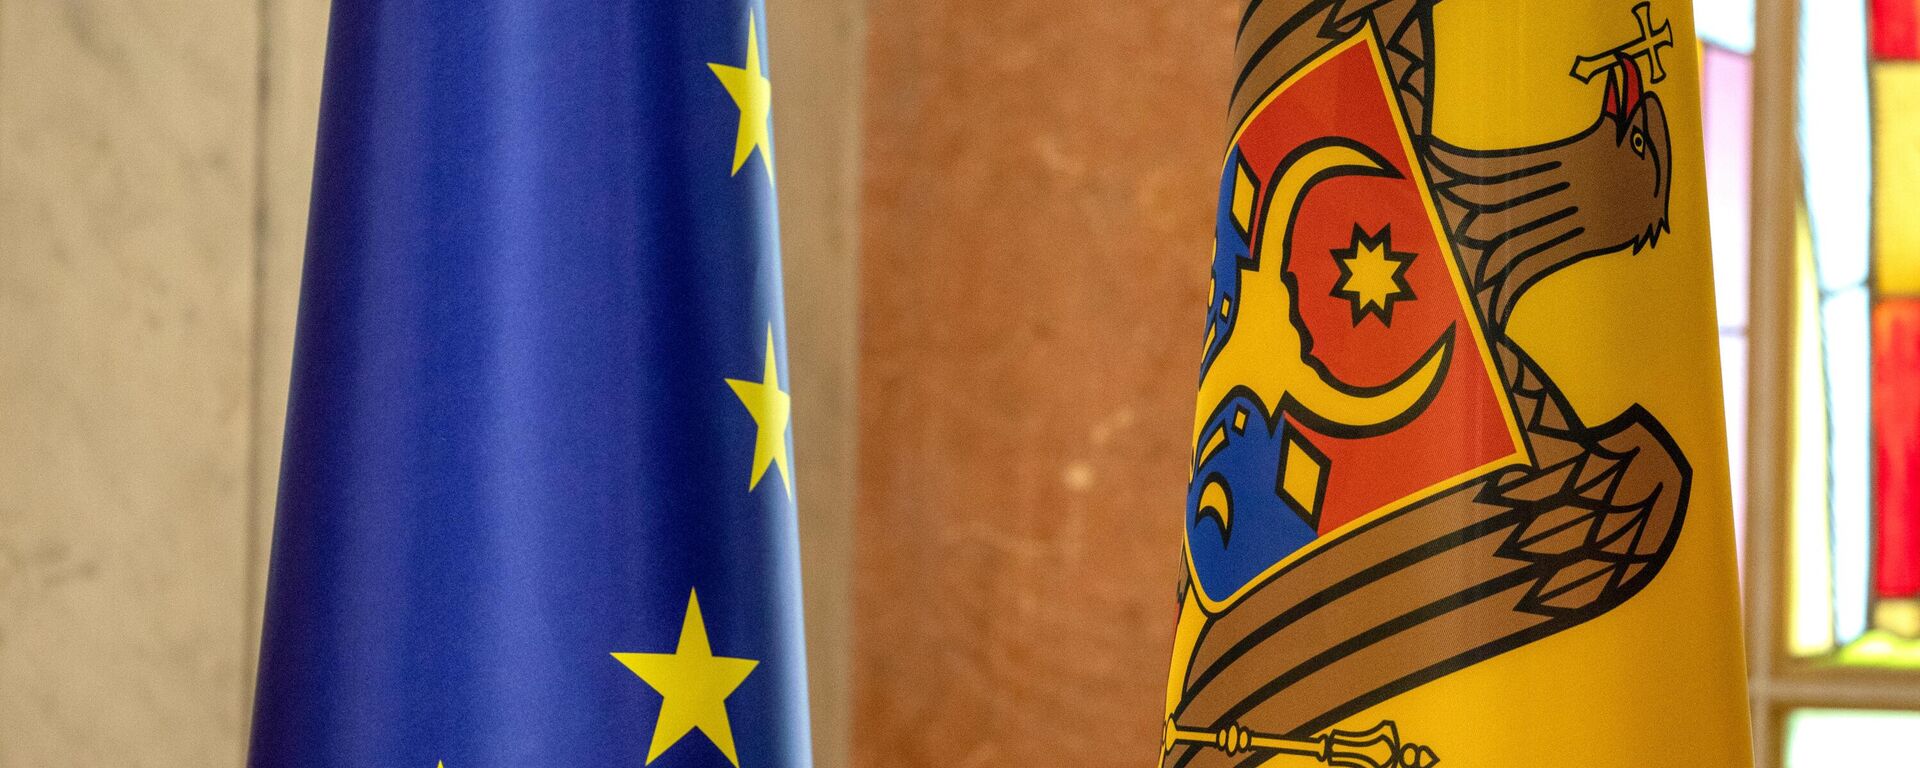 Bandeiras nacionais da Moldávia e da União Europeia em uma coletiva em Chisinau da presidente moldava Maia Sandu sobre a concessão à Moldávia do status de país candidato ao ingresso na União Europeia  - Sputnik Brasil, 1920, 19.12.2022